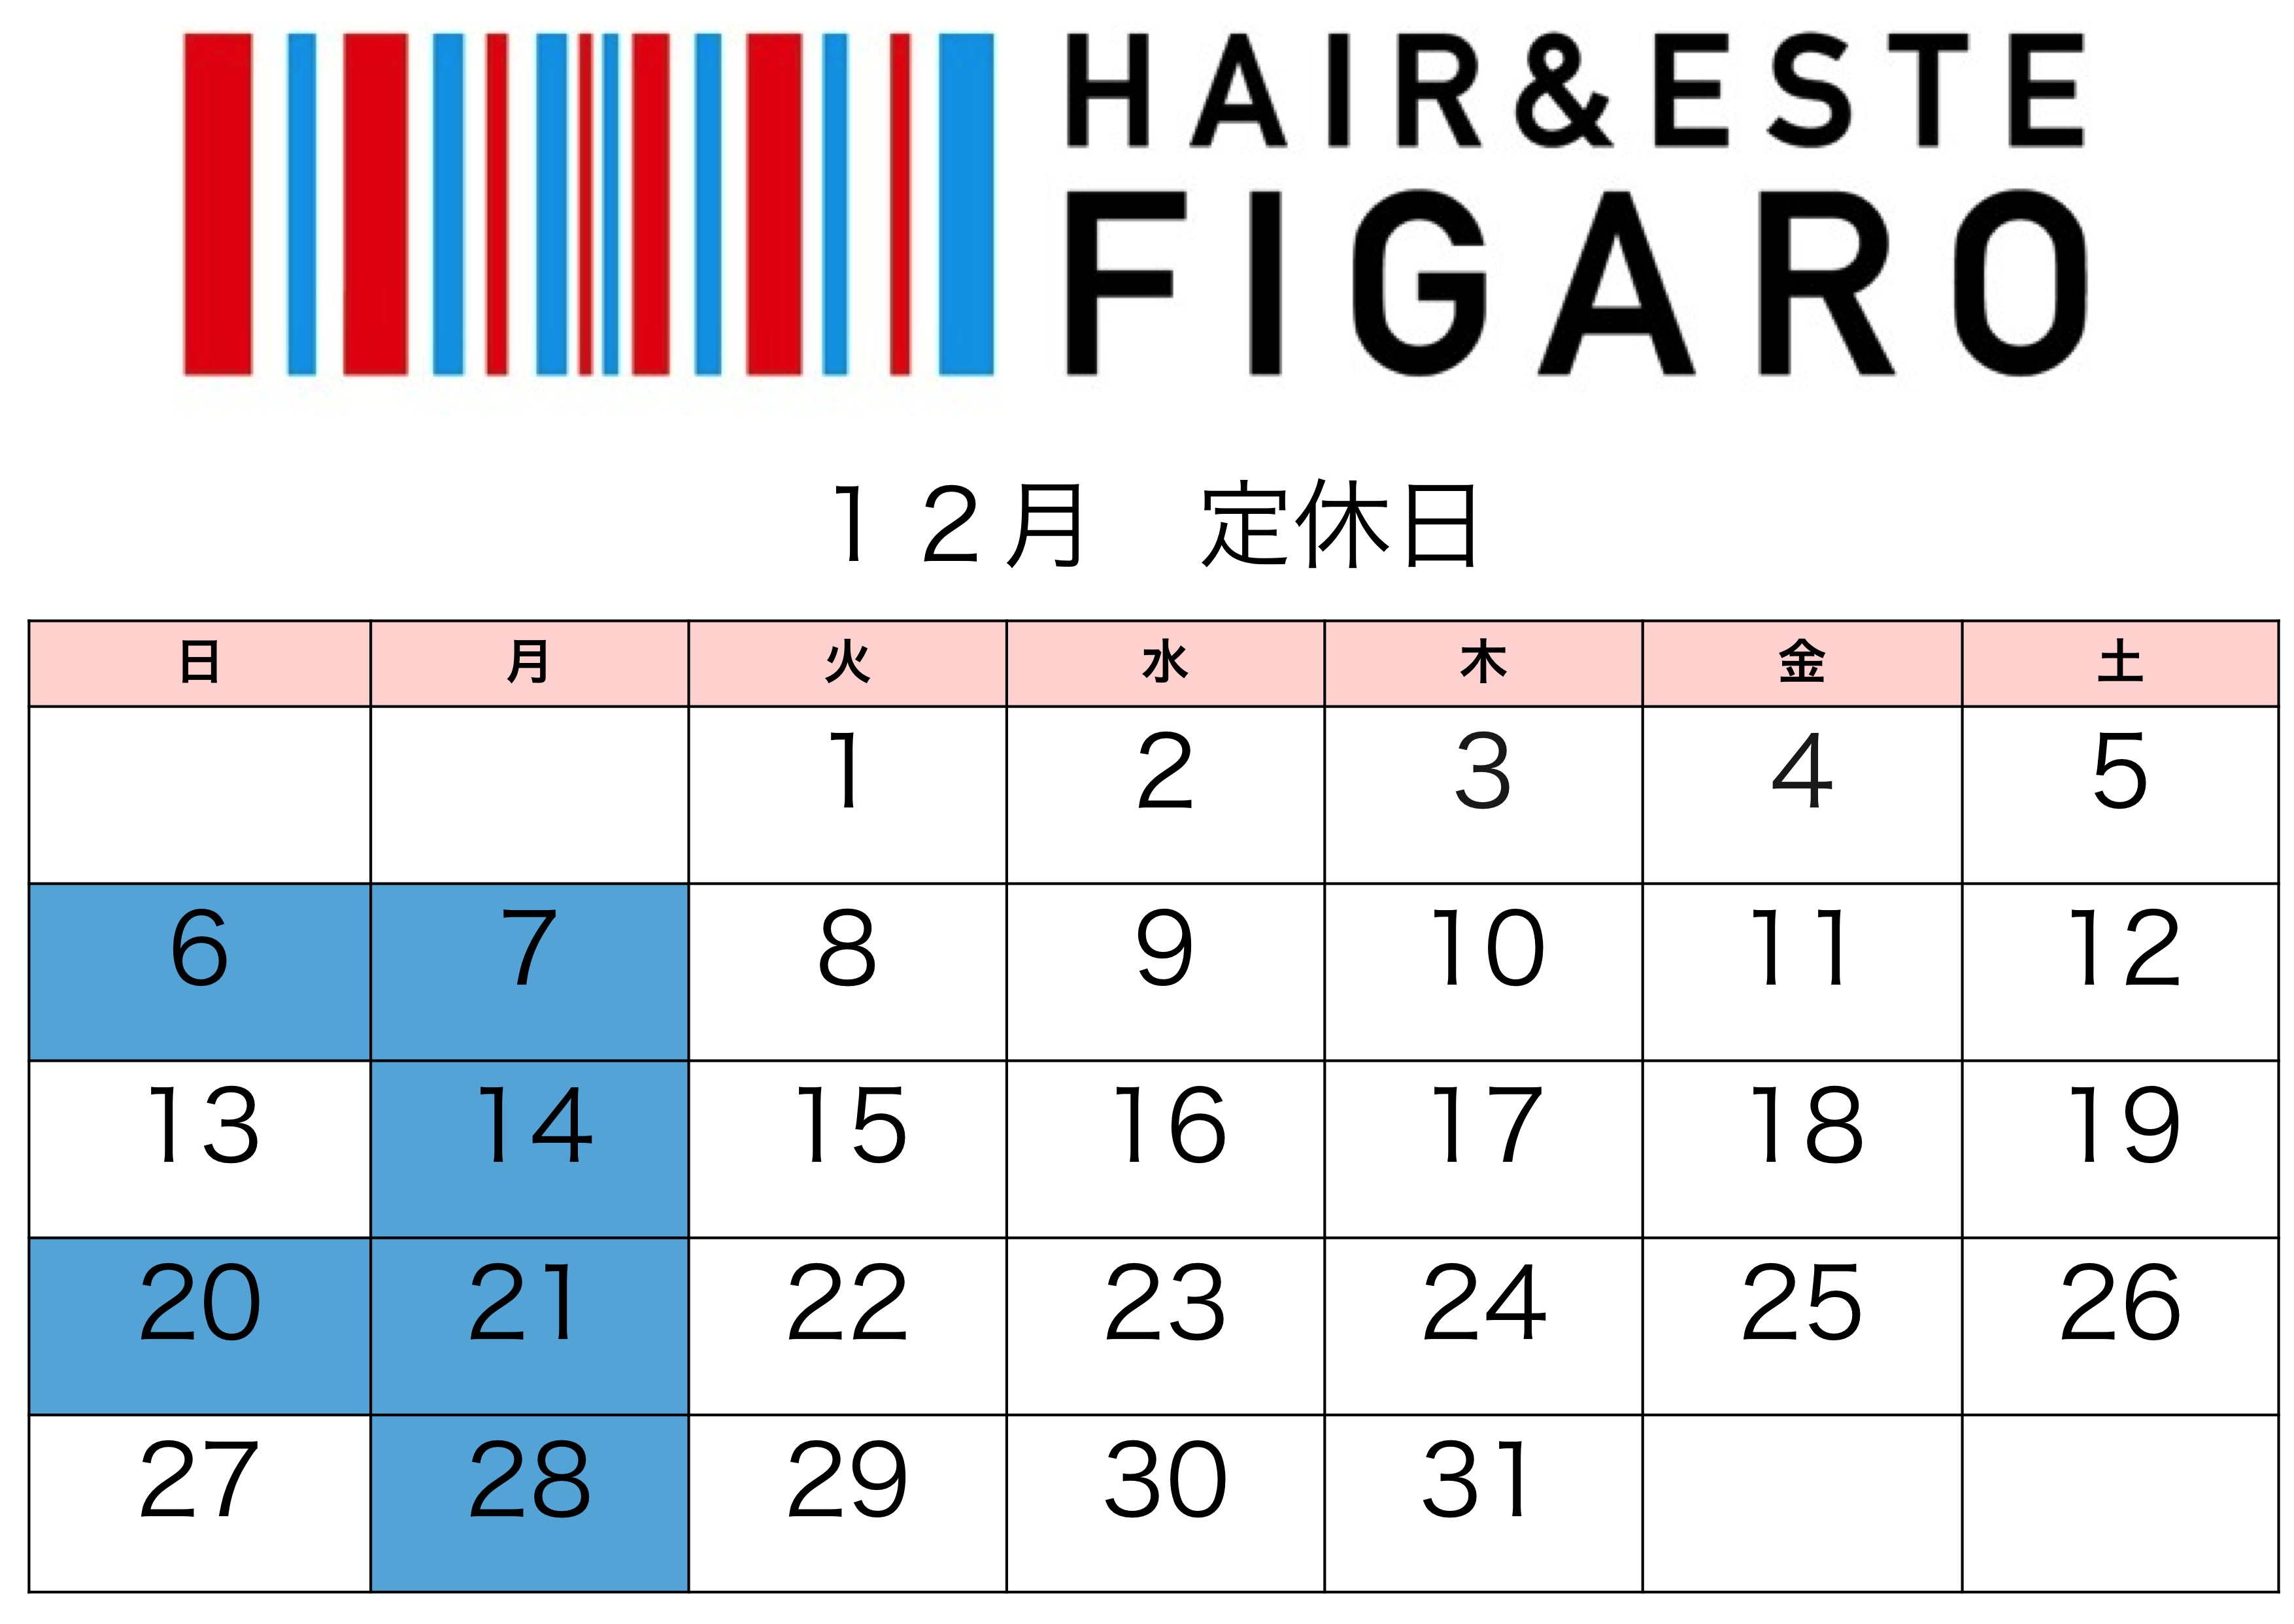 http://figaro-hair.com/blog/2015%E3%80%8212.jpg